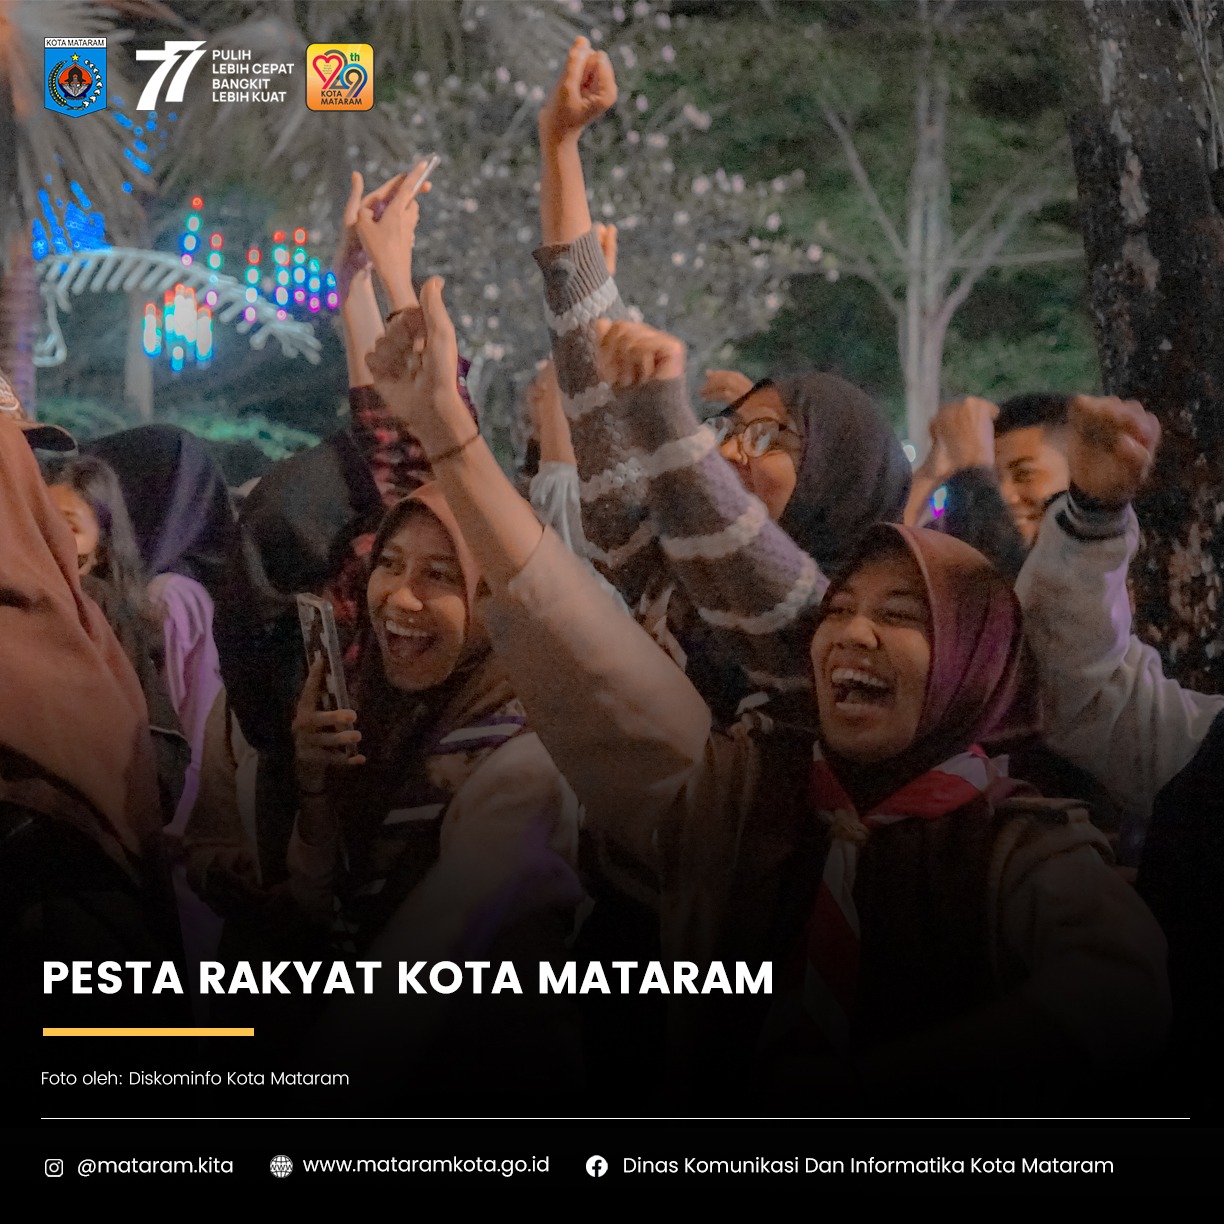 Pesta Rakyat Kota Mataram